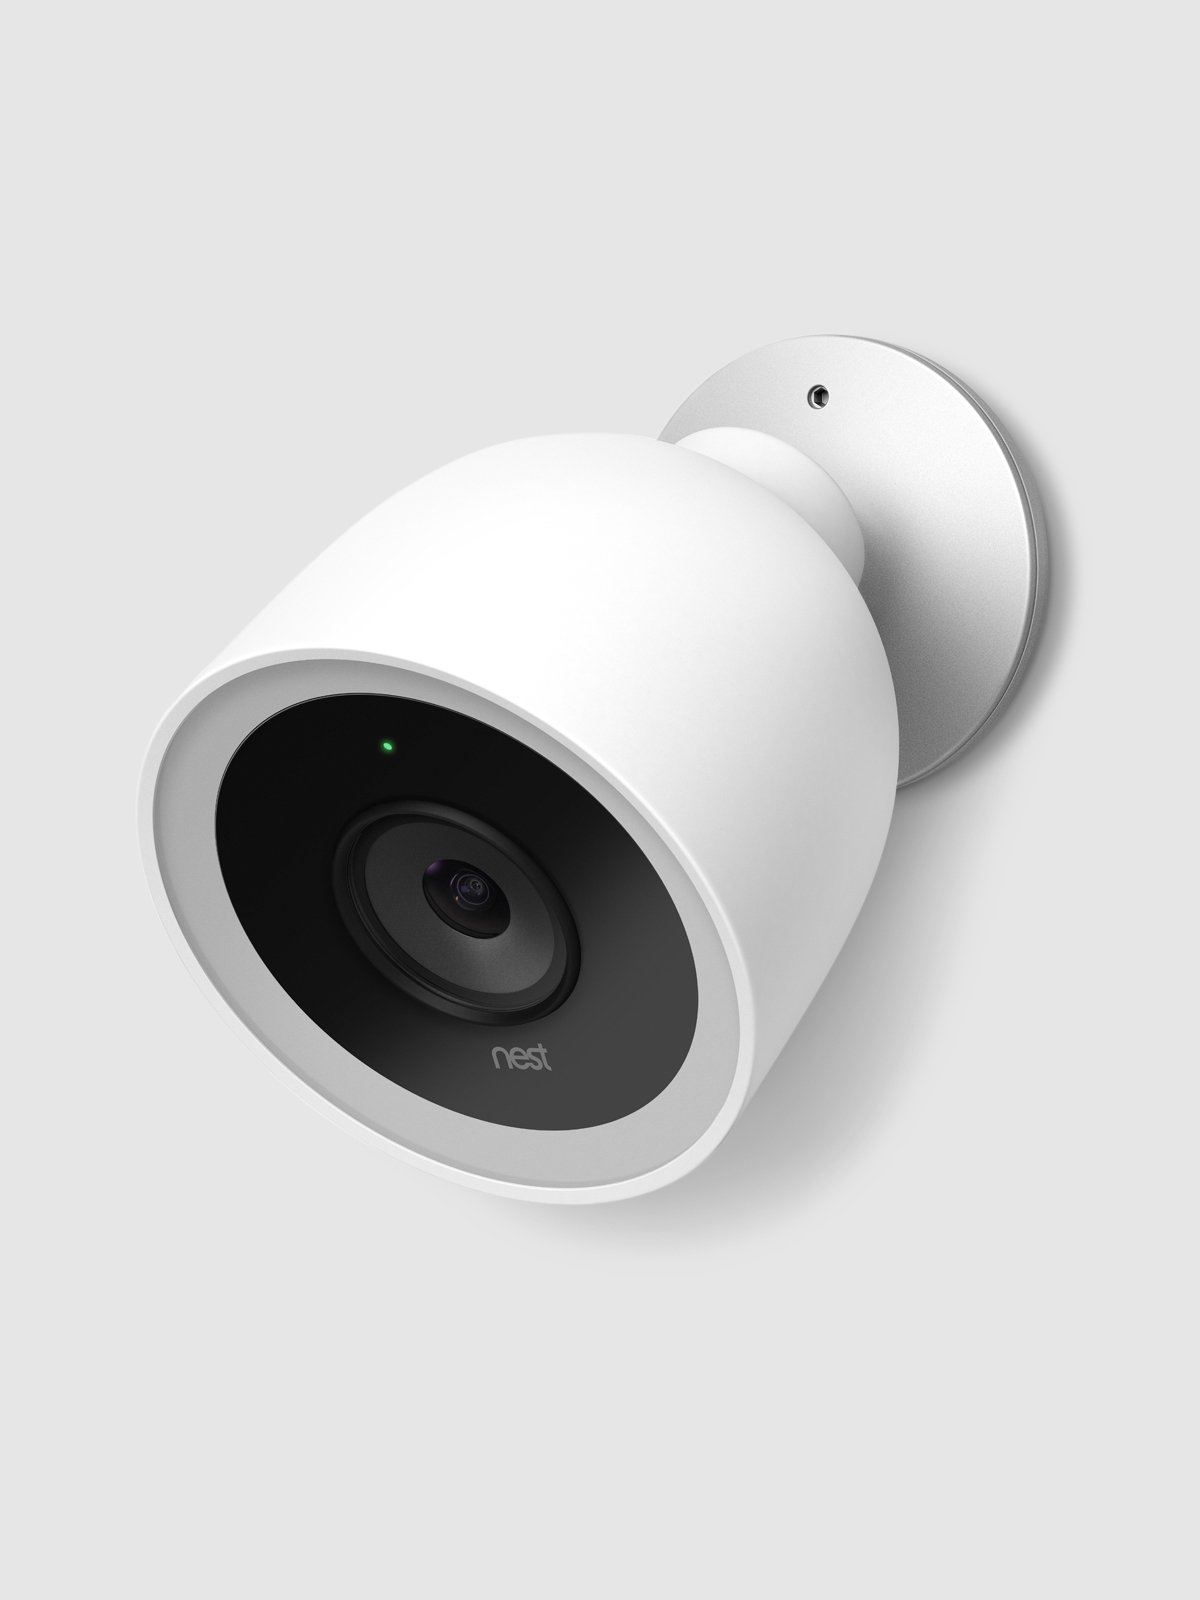 nest security camera